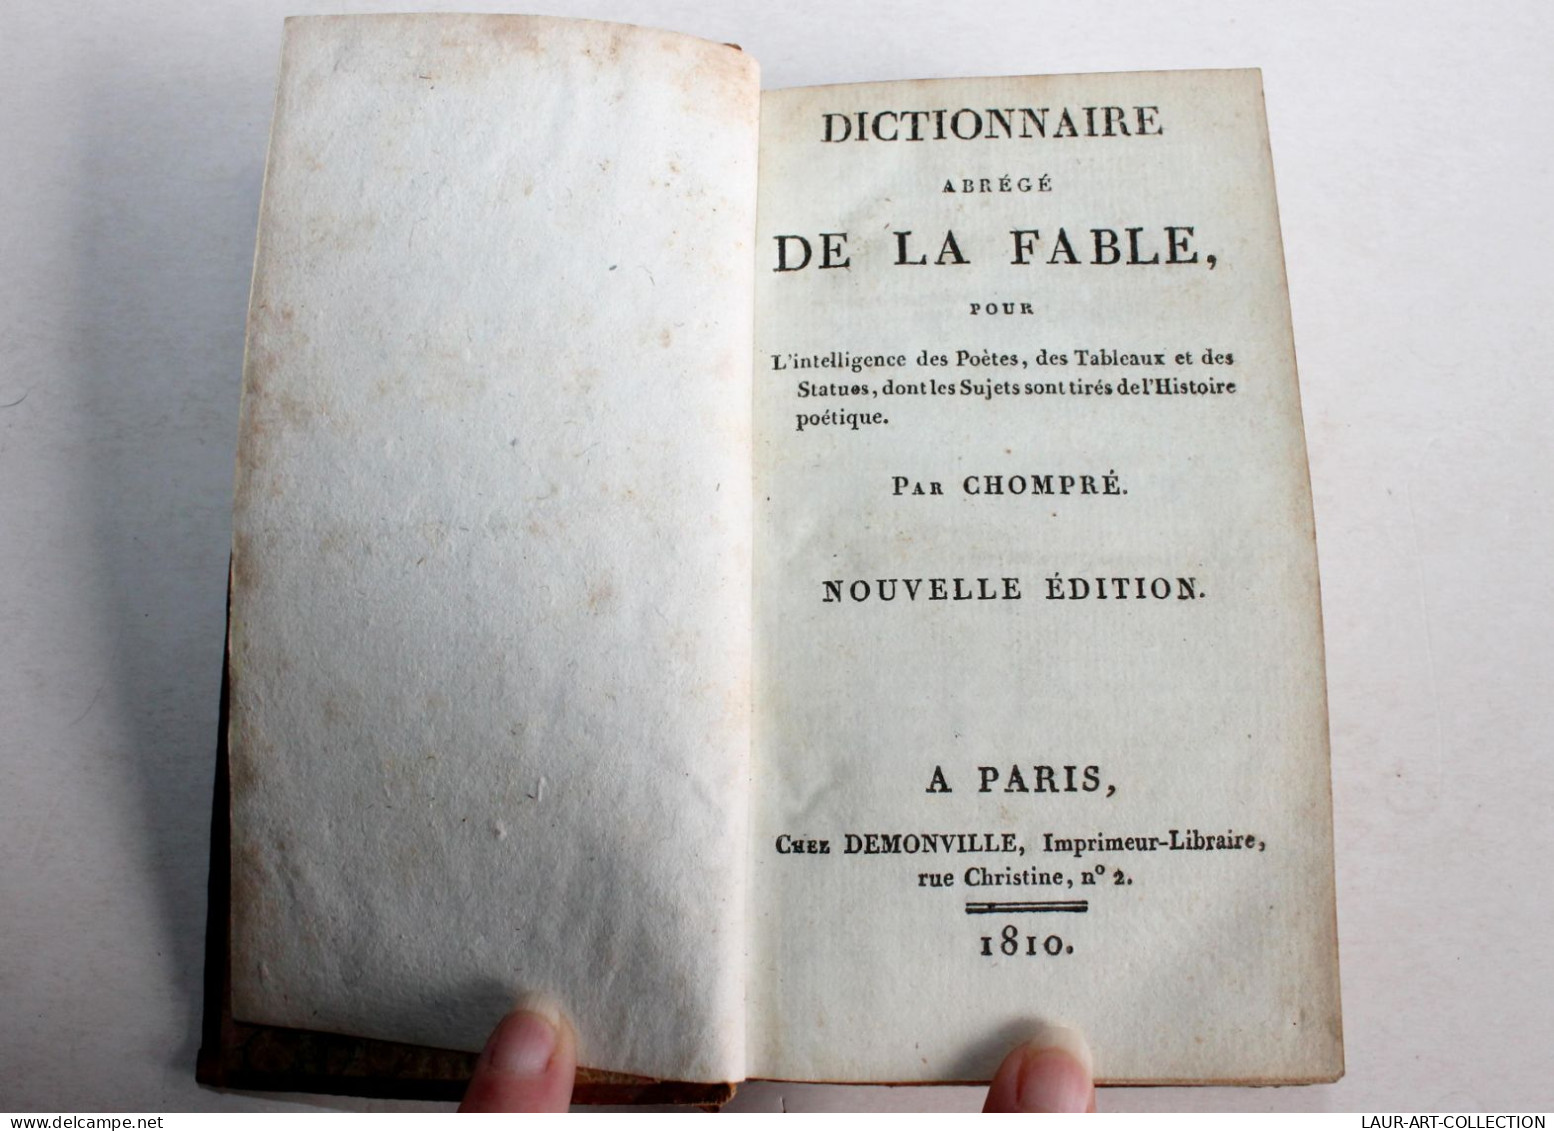 DICTIONNAIRE ABREGE DE LA FABLE Pour DES POETES De CHOMPRE NOUVELLE EDITION 1810 / ANCIEN LIVRE XIXe SIECLE (1803.116) - Franse Schrijvers